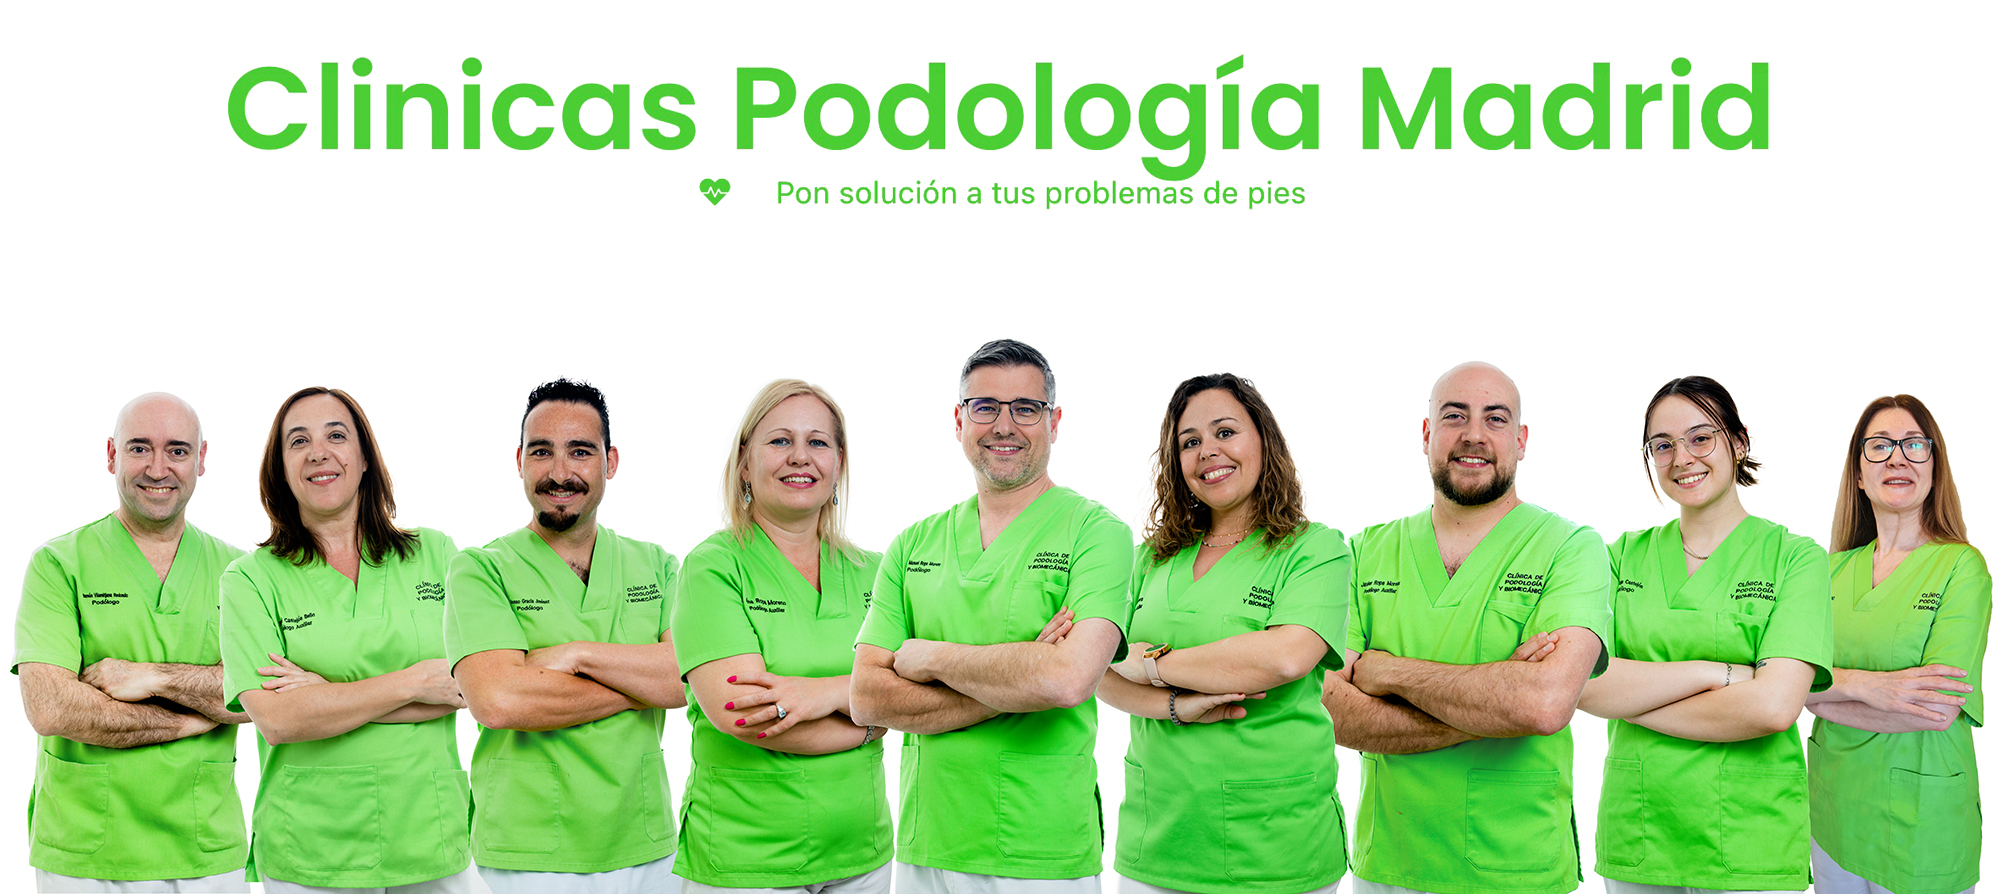 Clinica-podologia-madrid-equipo